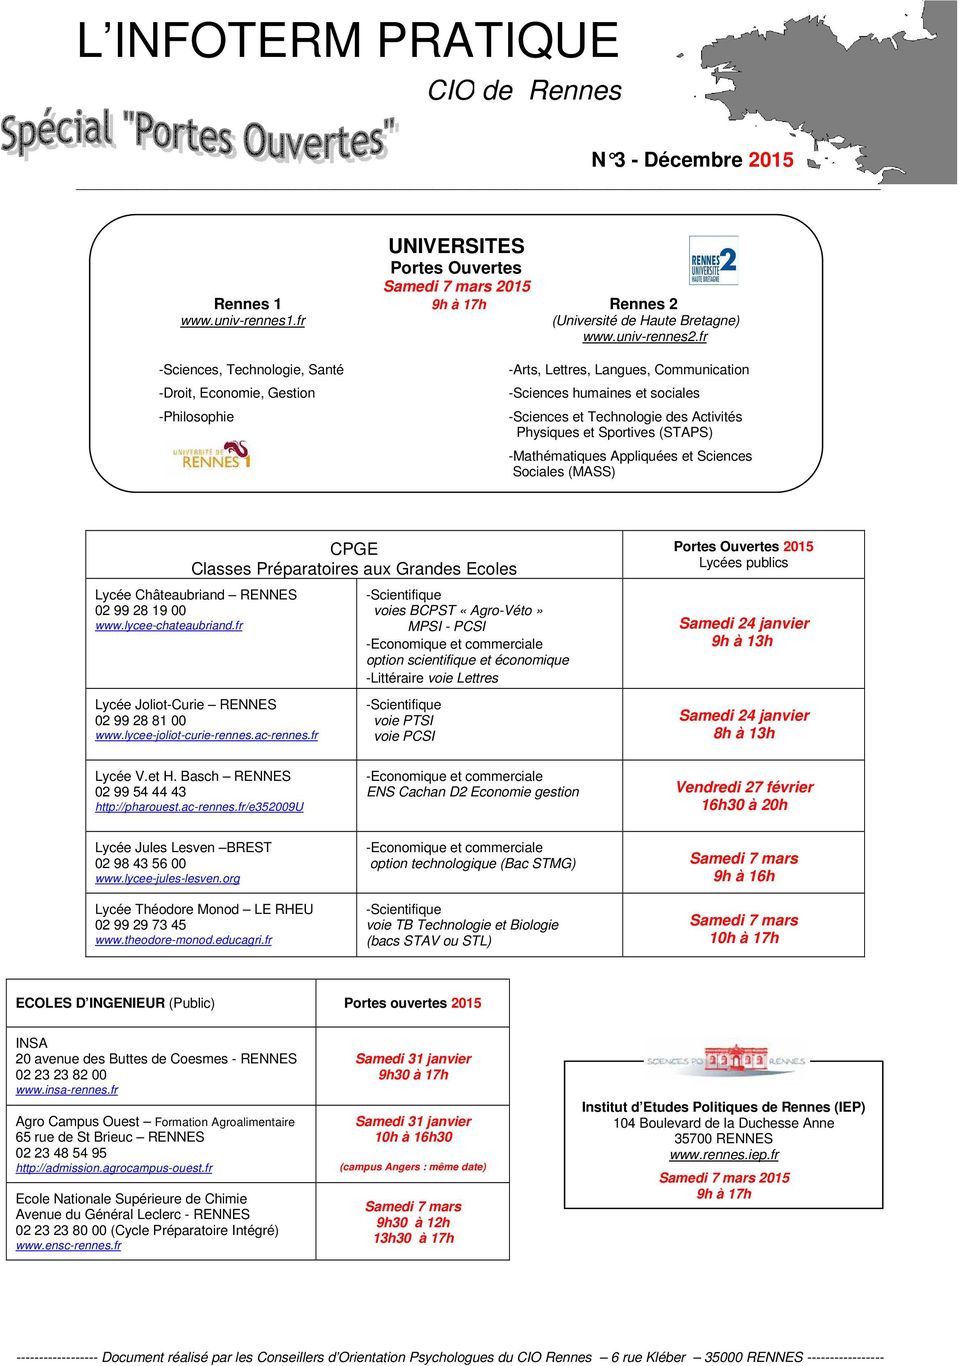 Sportives (STAPS) -Mathématiques Appliquées et Sciences Sociales (MASS) CPGE Classes Préparatoires aux Grandes Ecoles Lycée Châteaubriand RENNES 02 99 28 19 00 www.lycee-chateaubriand.